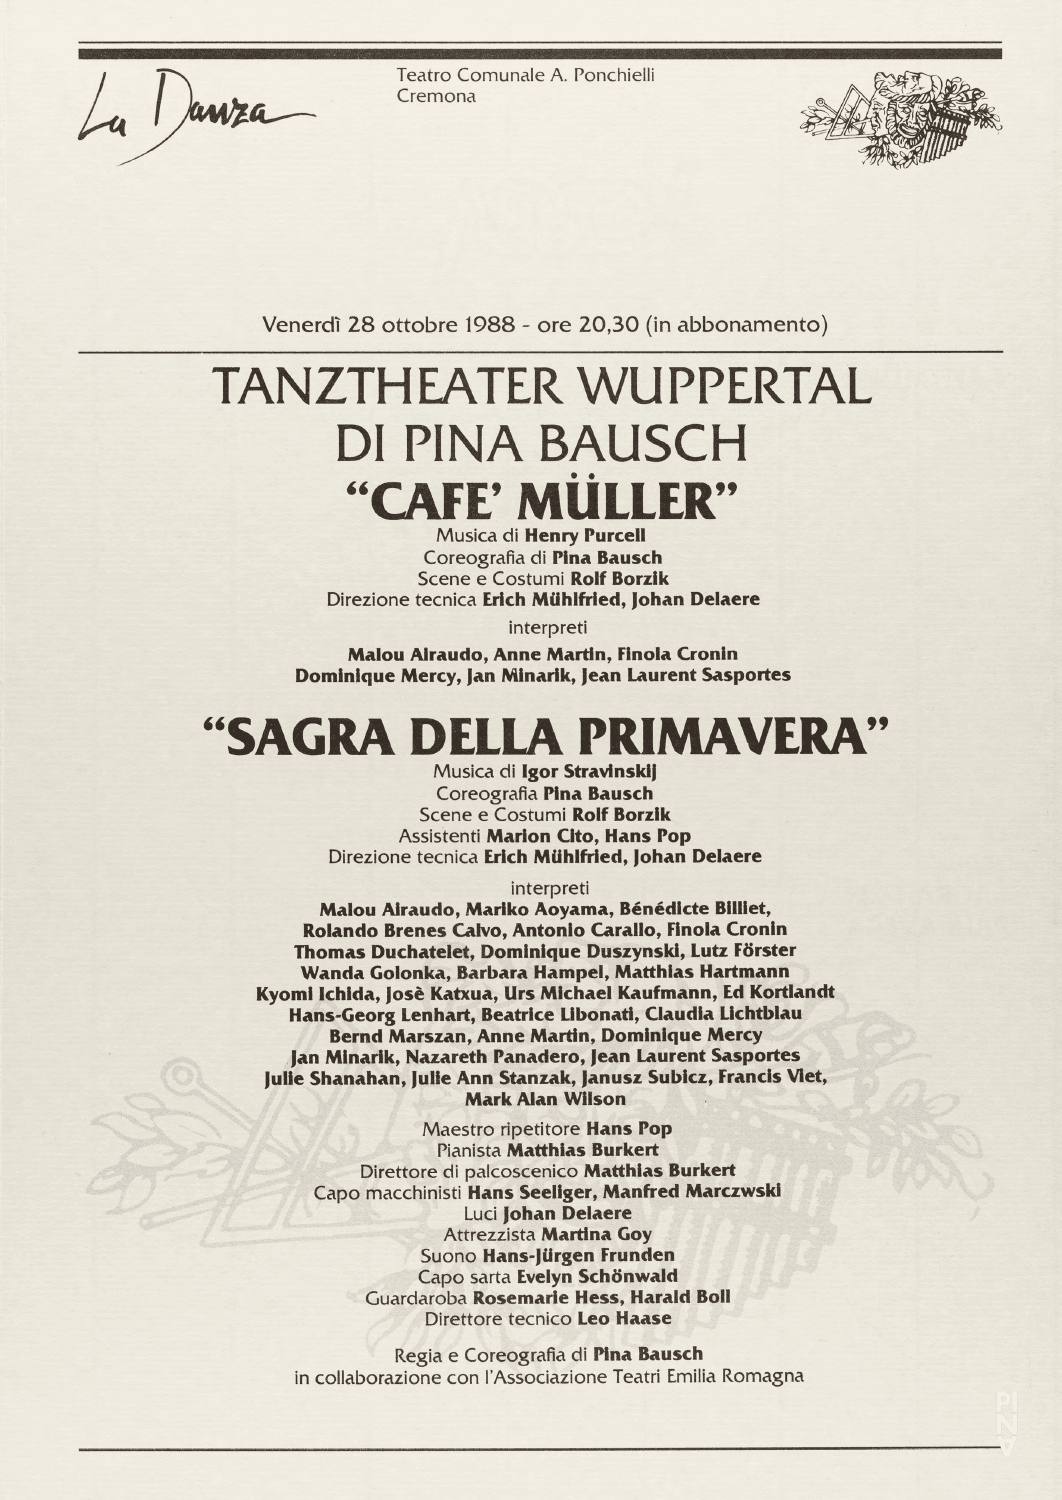 Programme pour « Café Müller » et « Le Sacre du printemps » de Pina Bausch avec Tanztheater Wuppertal à Cremona, 28 octobre 1988